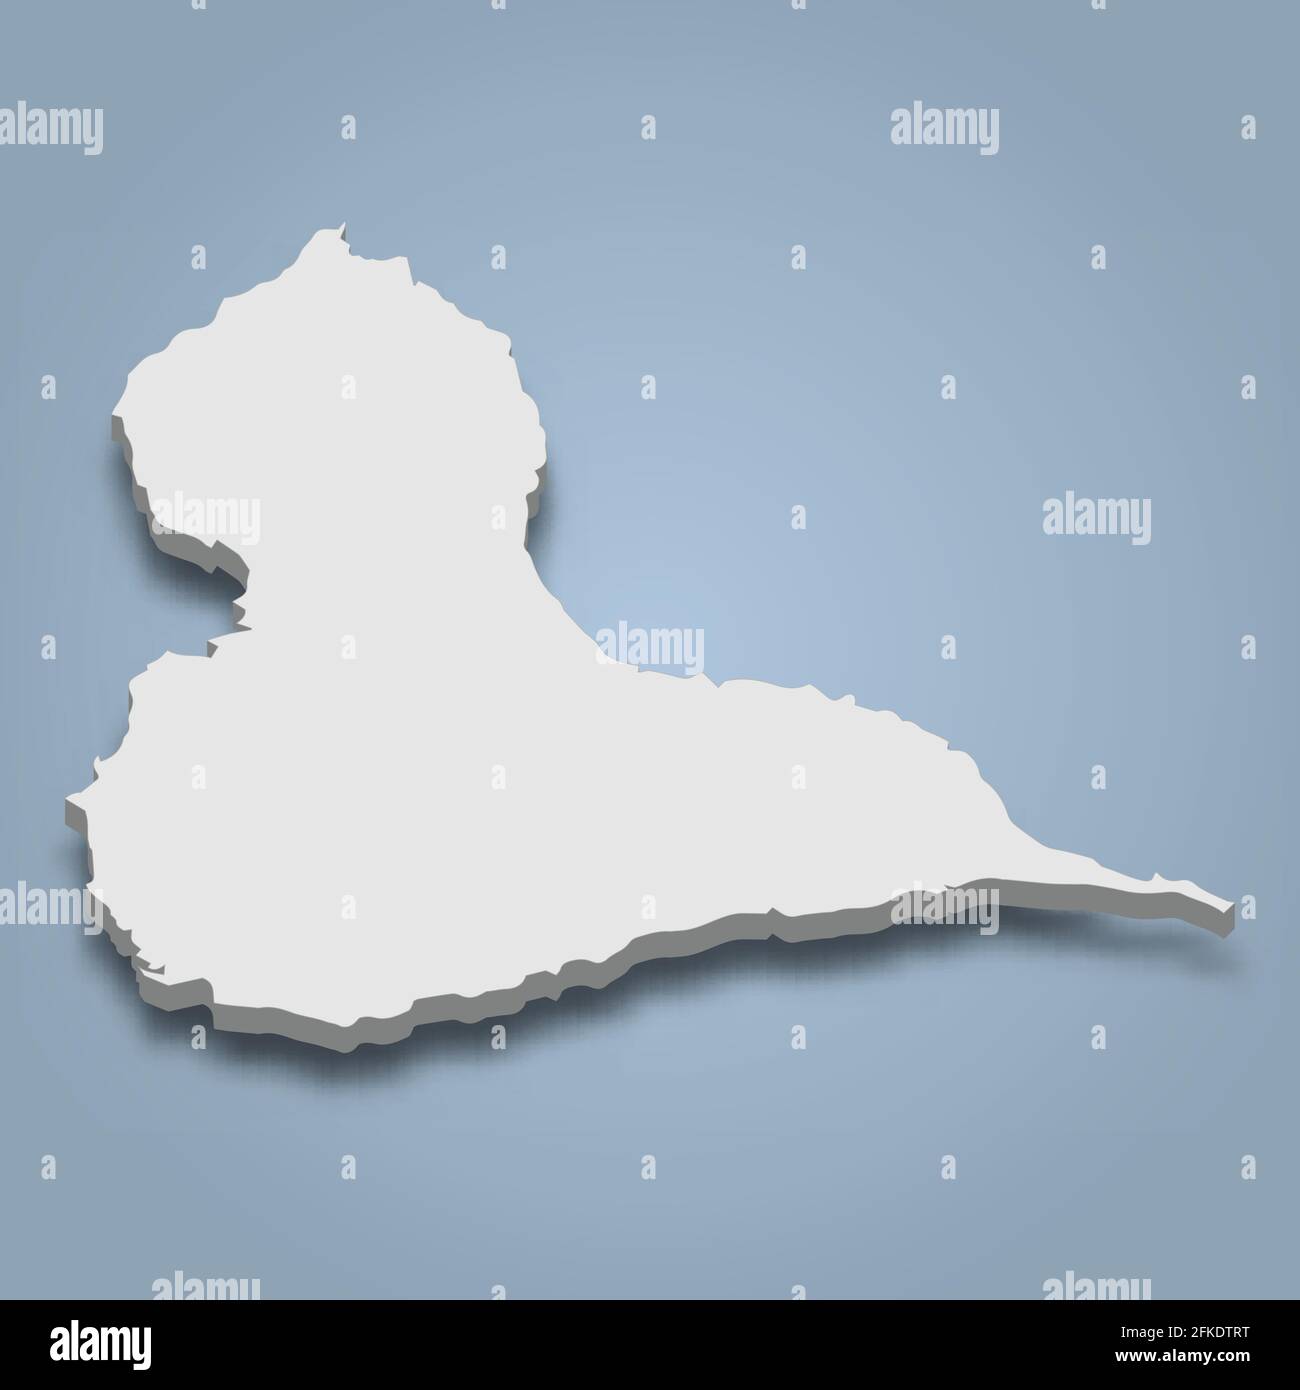 carte isométrique 3d de Grande-Terre est une île en Guadeloupe, illustration vectorielle isolée Illustration de Vecteur